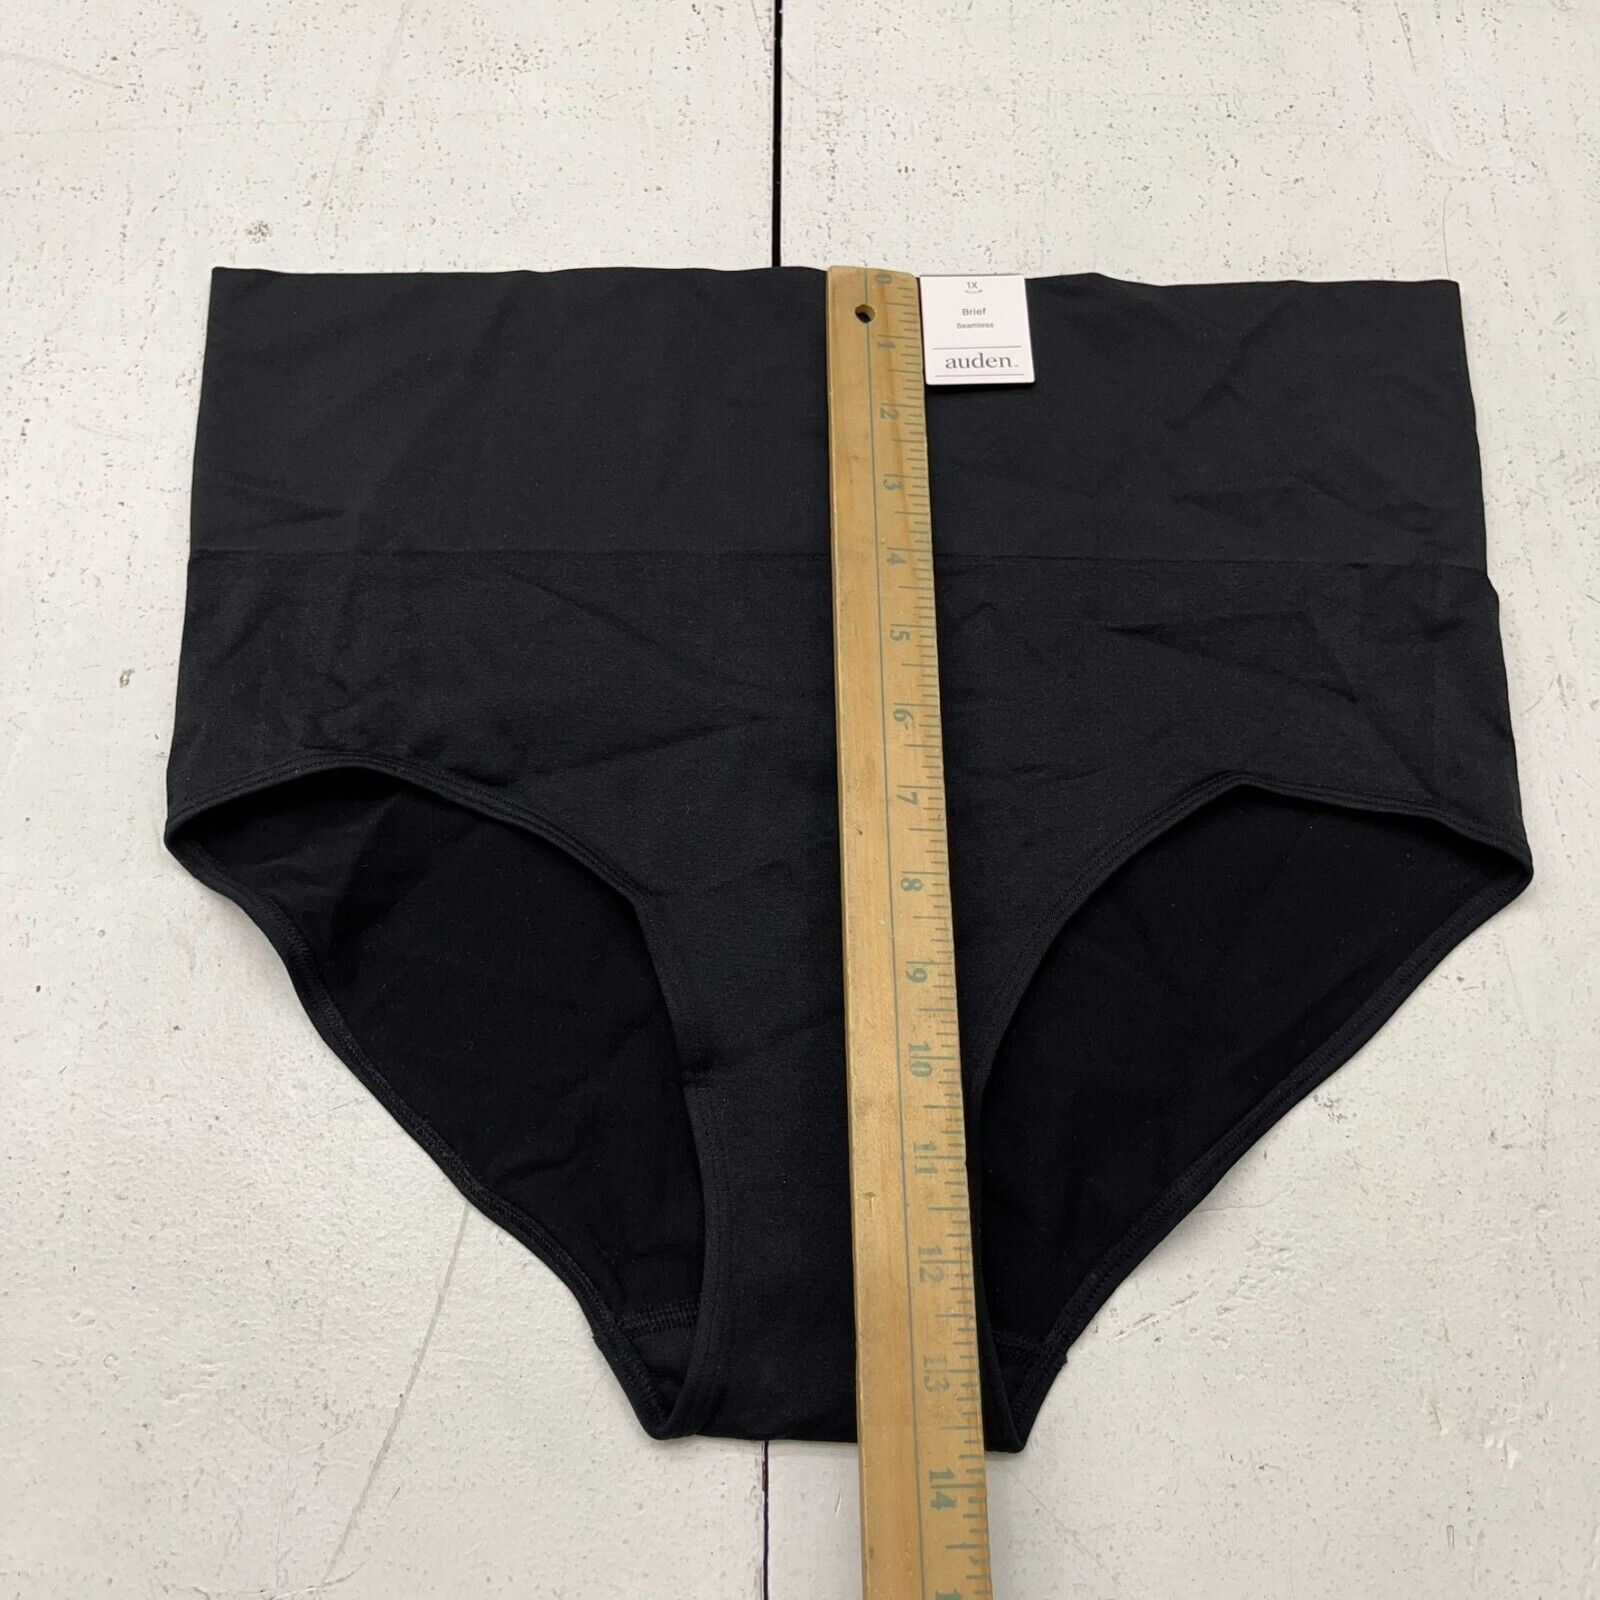 Auden Black Seamless Brief Underwear Women's Size 1X NEW - beyond exchange